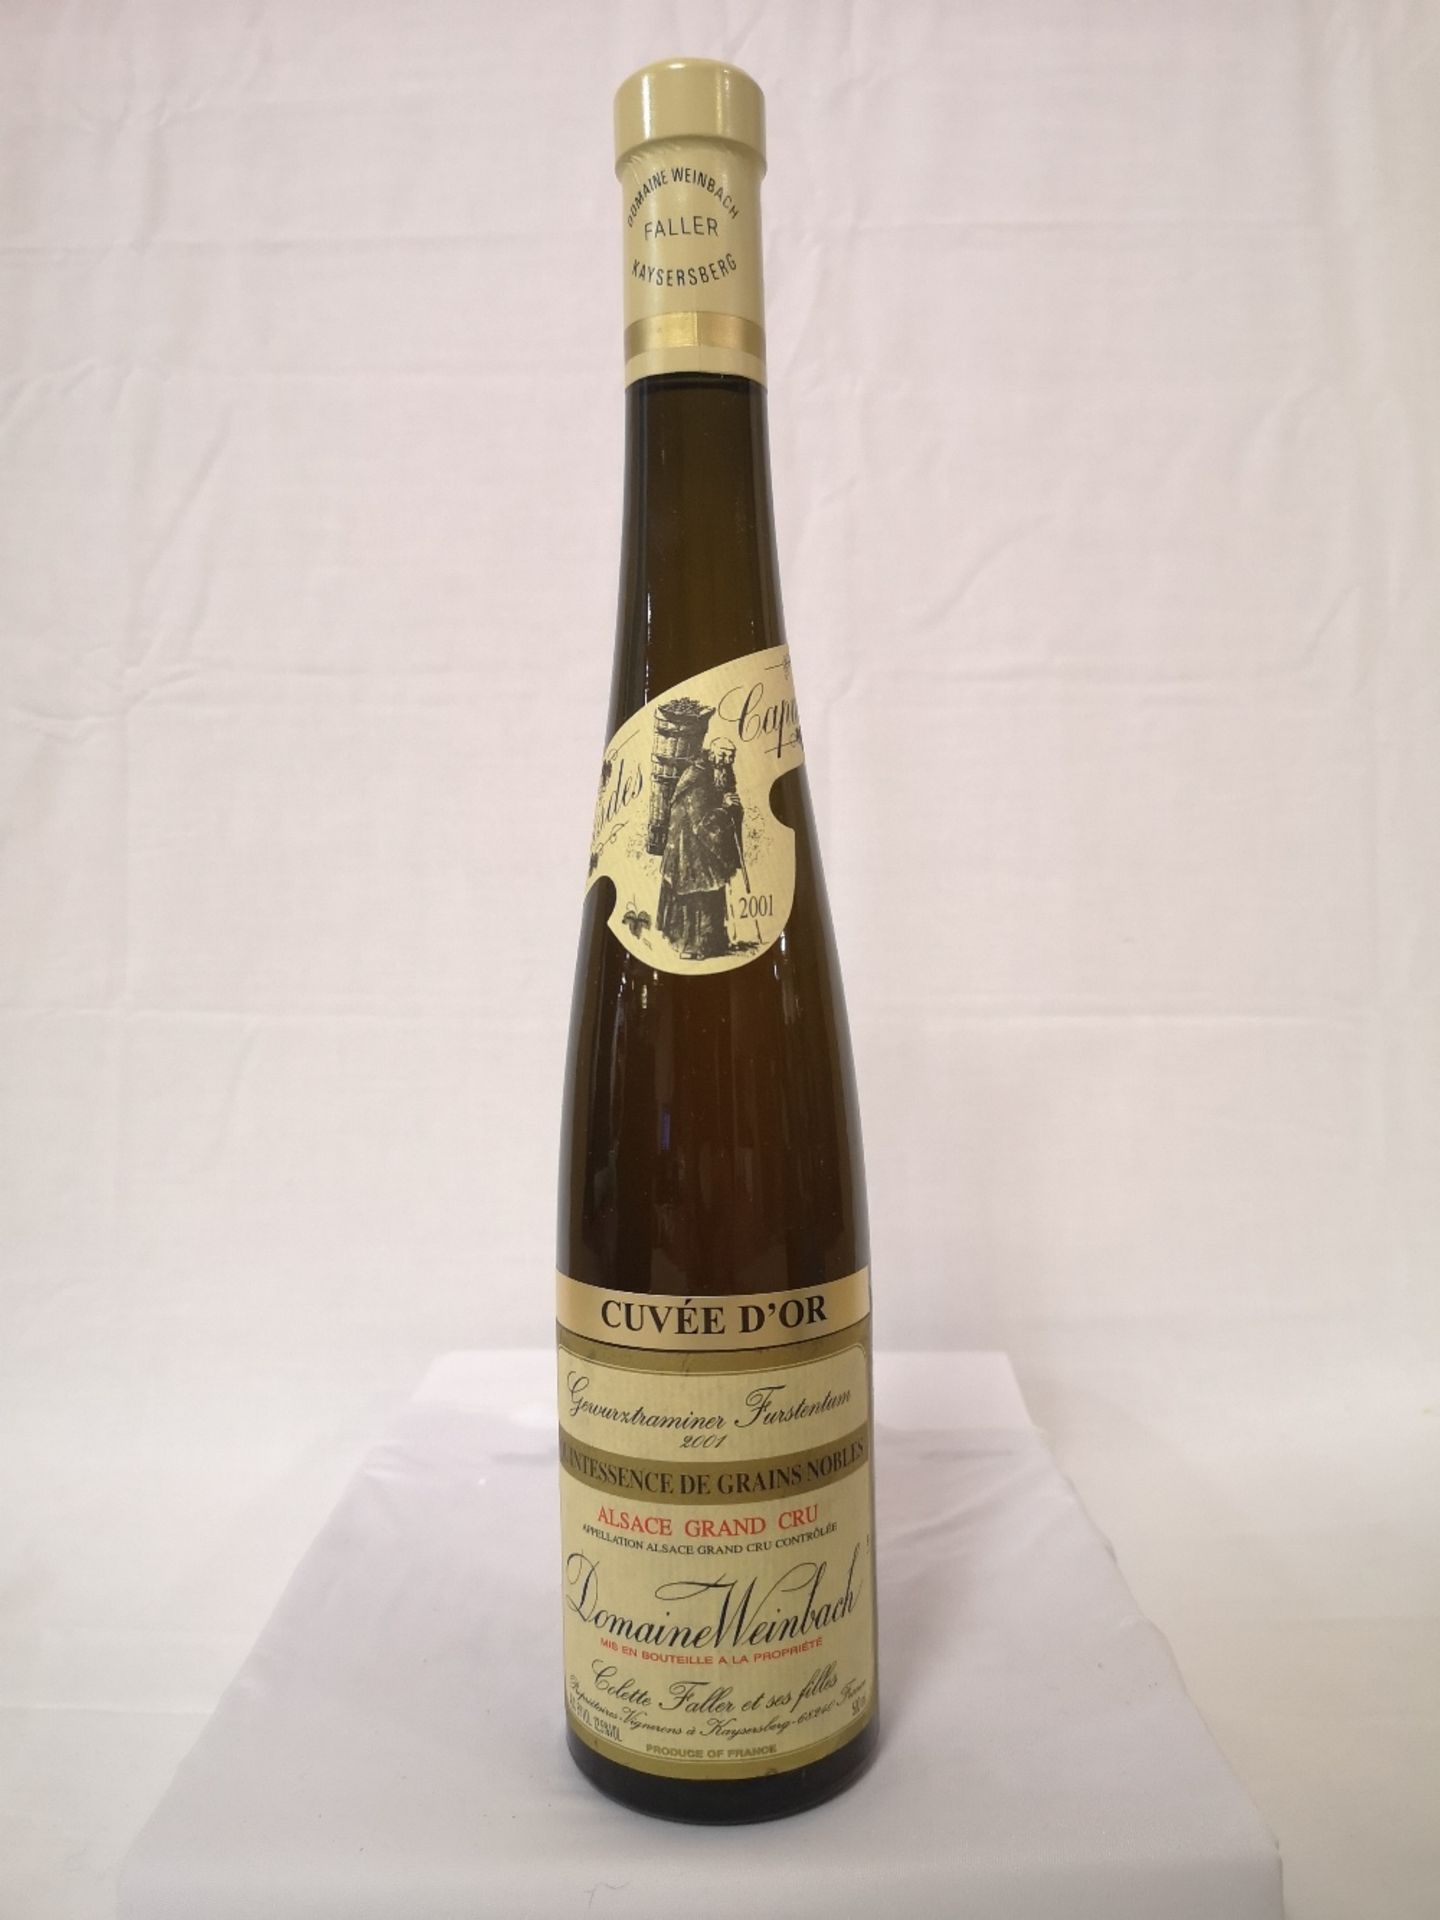 (2) Bottles of Gewurztraminer Selection de Grains Nobles Weinbach 2001 (375ml) - Image 2 of 10